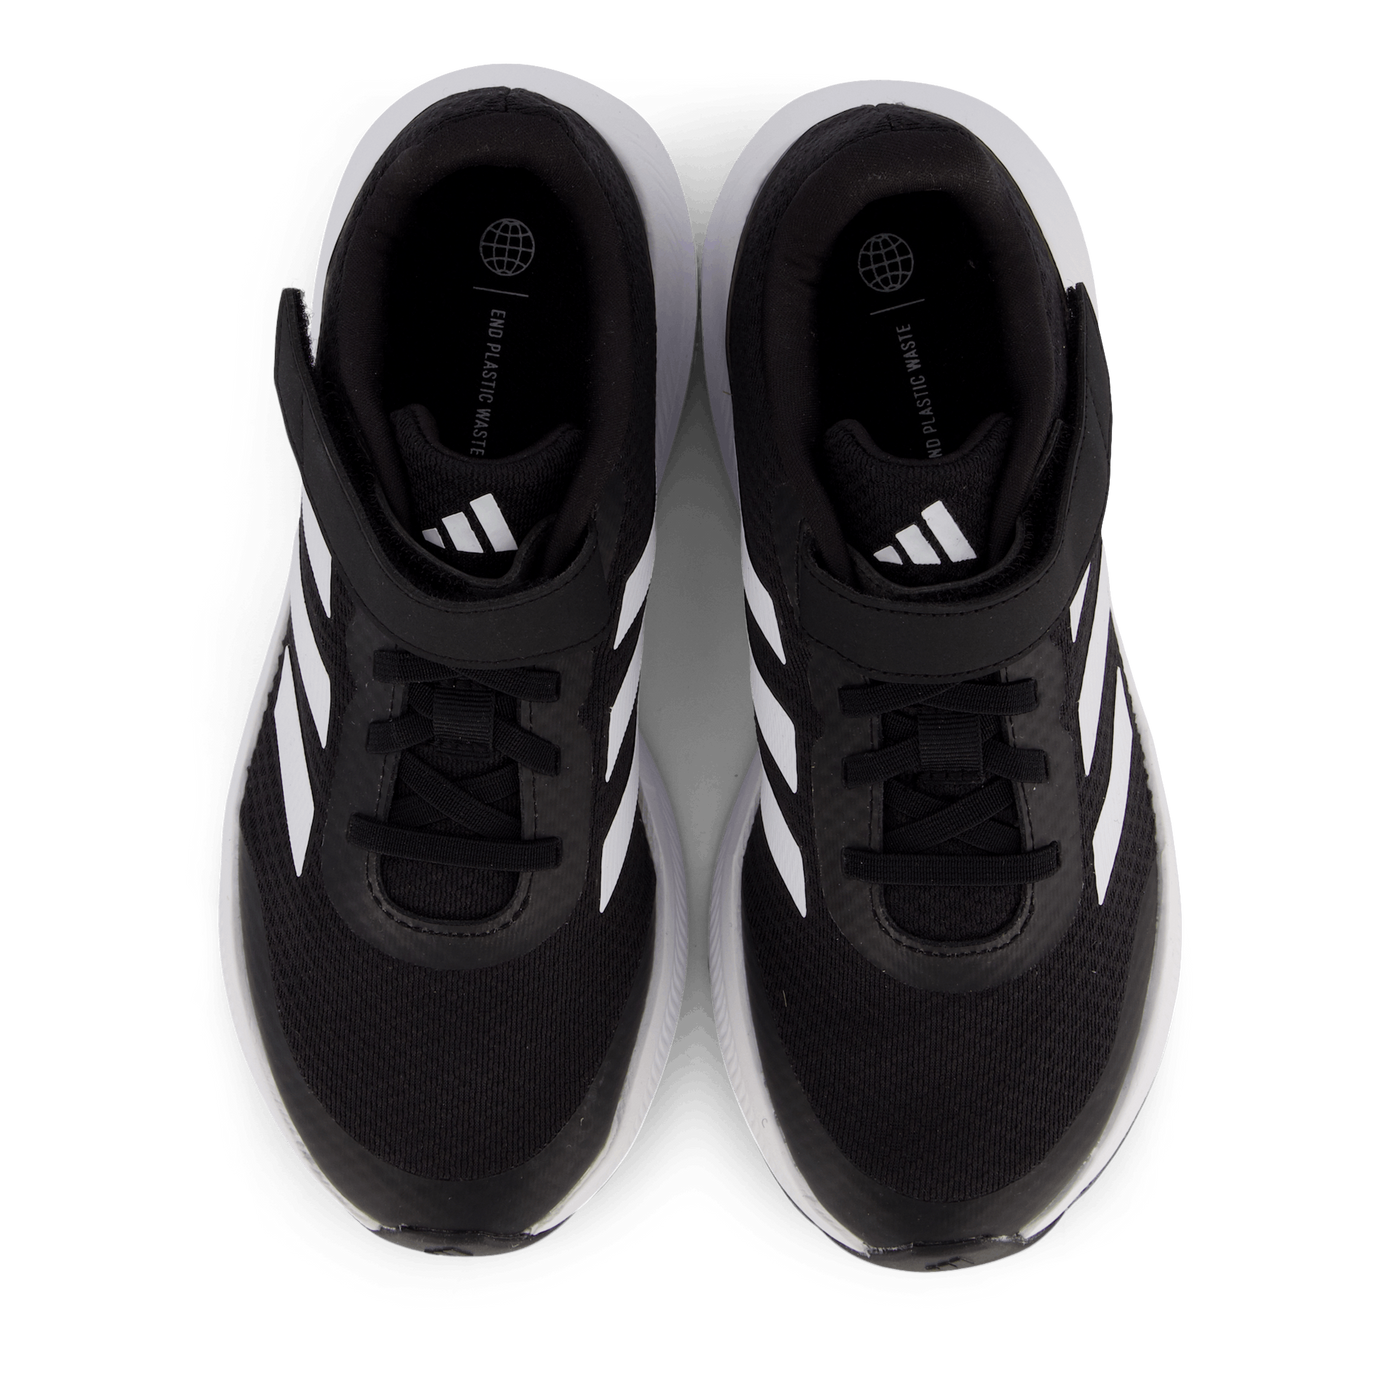 RunFalcon 3.0 Elastic Lace Top Strap Shoes Core Black / Cloud White / Core Black